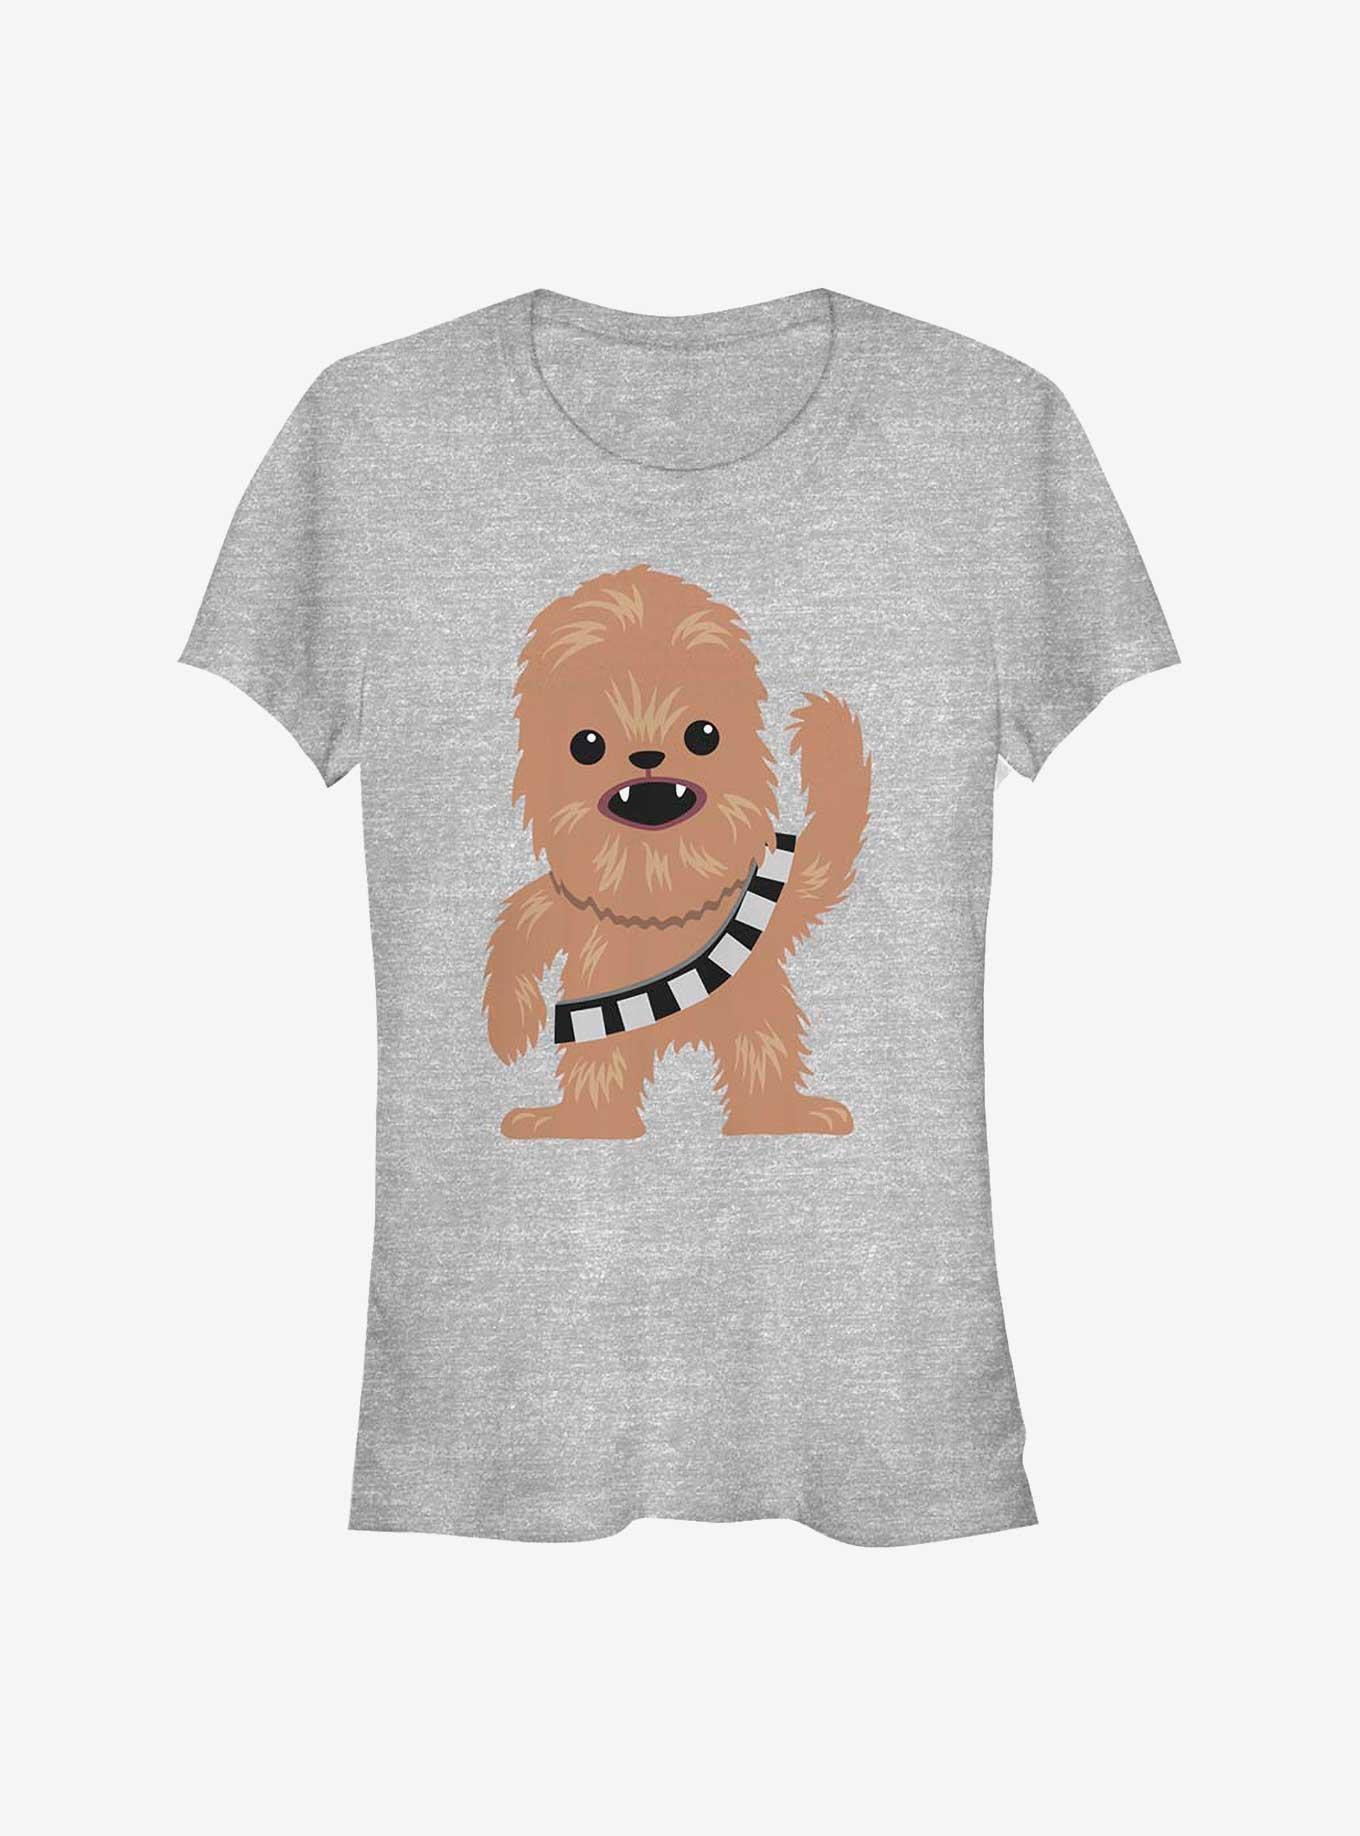 Star Wars Chewie Cutie Girls T-Shirt, ATH HTR, hi-res